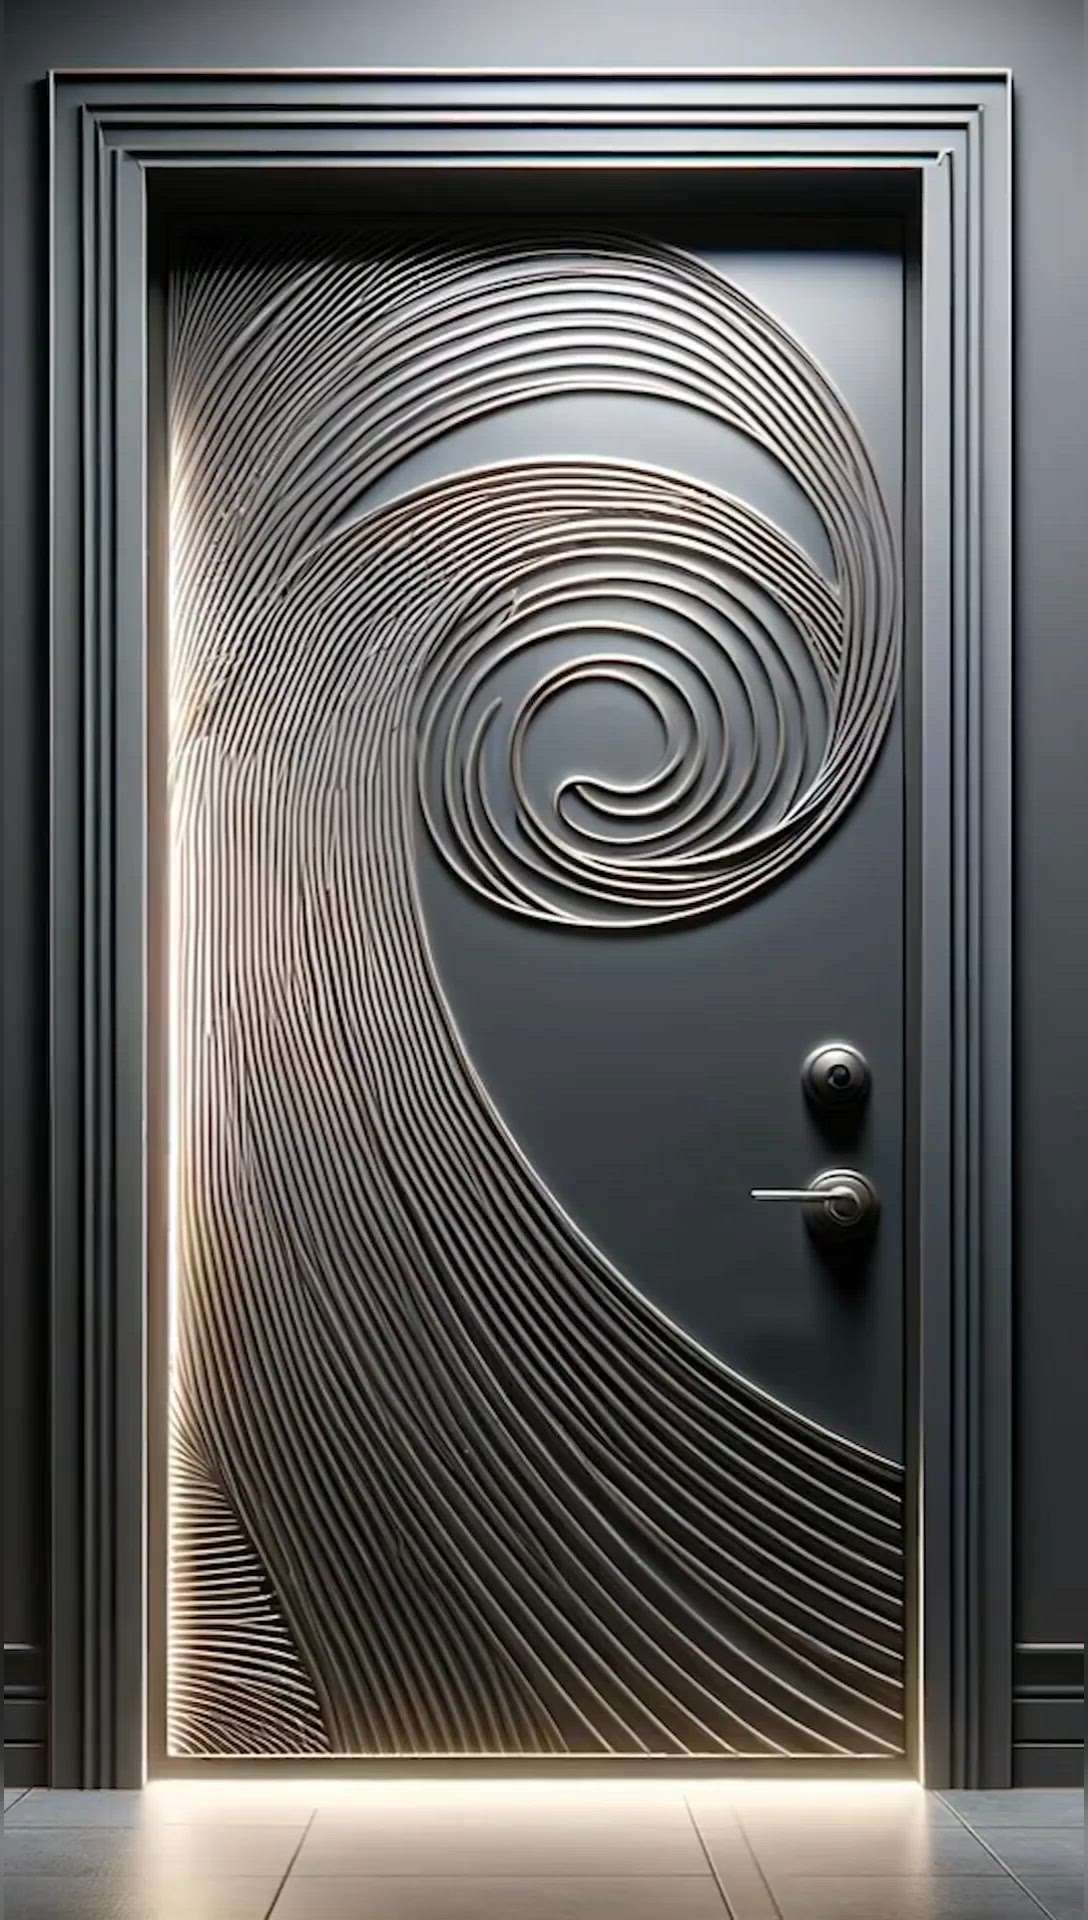 #creatorsofkolo #doors #dos #dont #buy #home #best #woodendoors #Steeldoor #glassfiberdoors #doors #maindoors #trending #viralkolo 
types of doors for your modern house